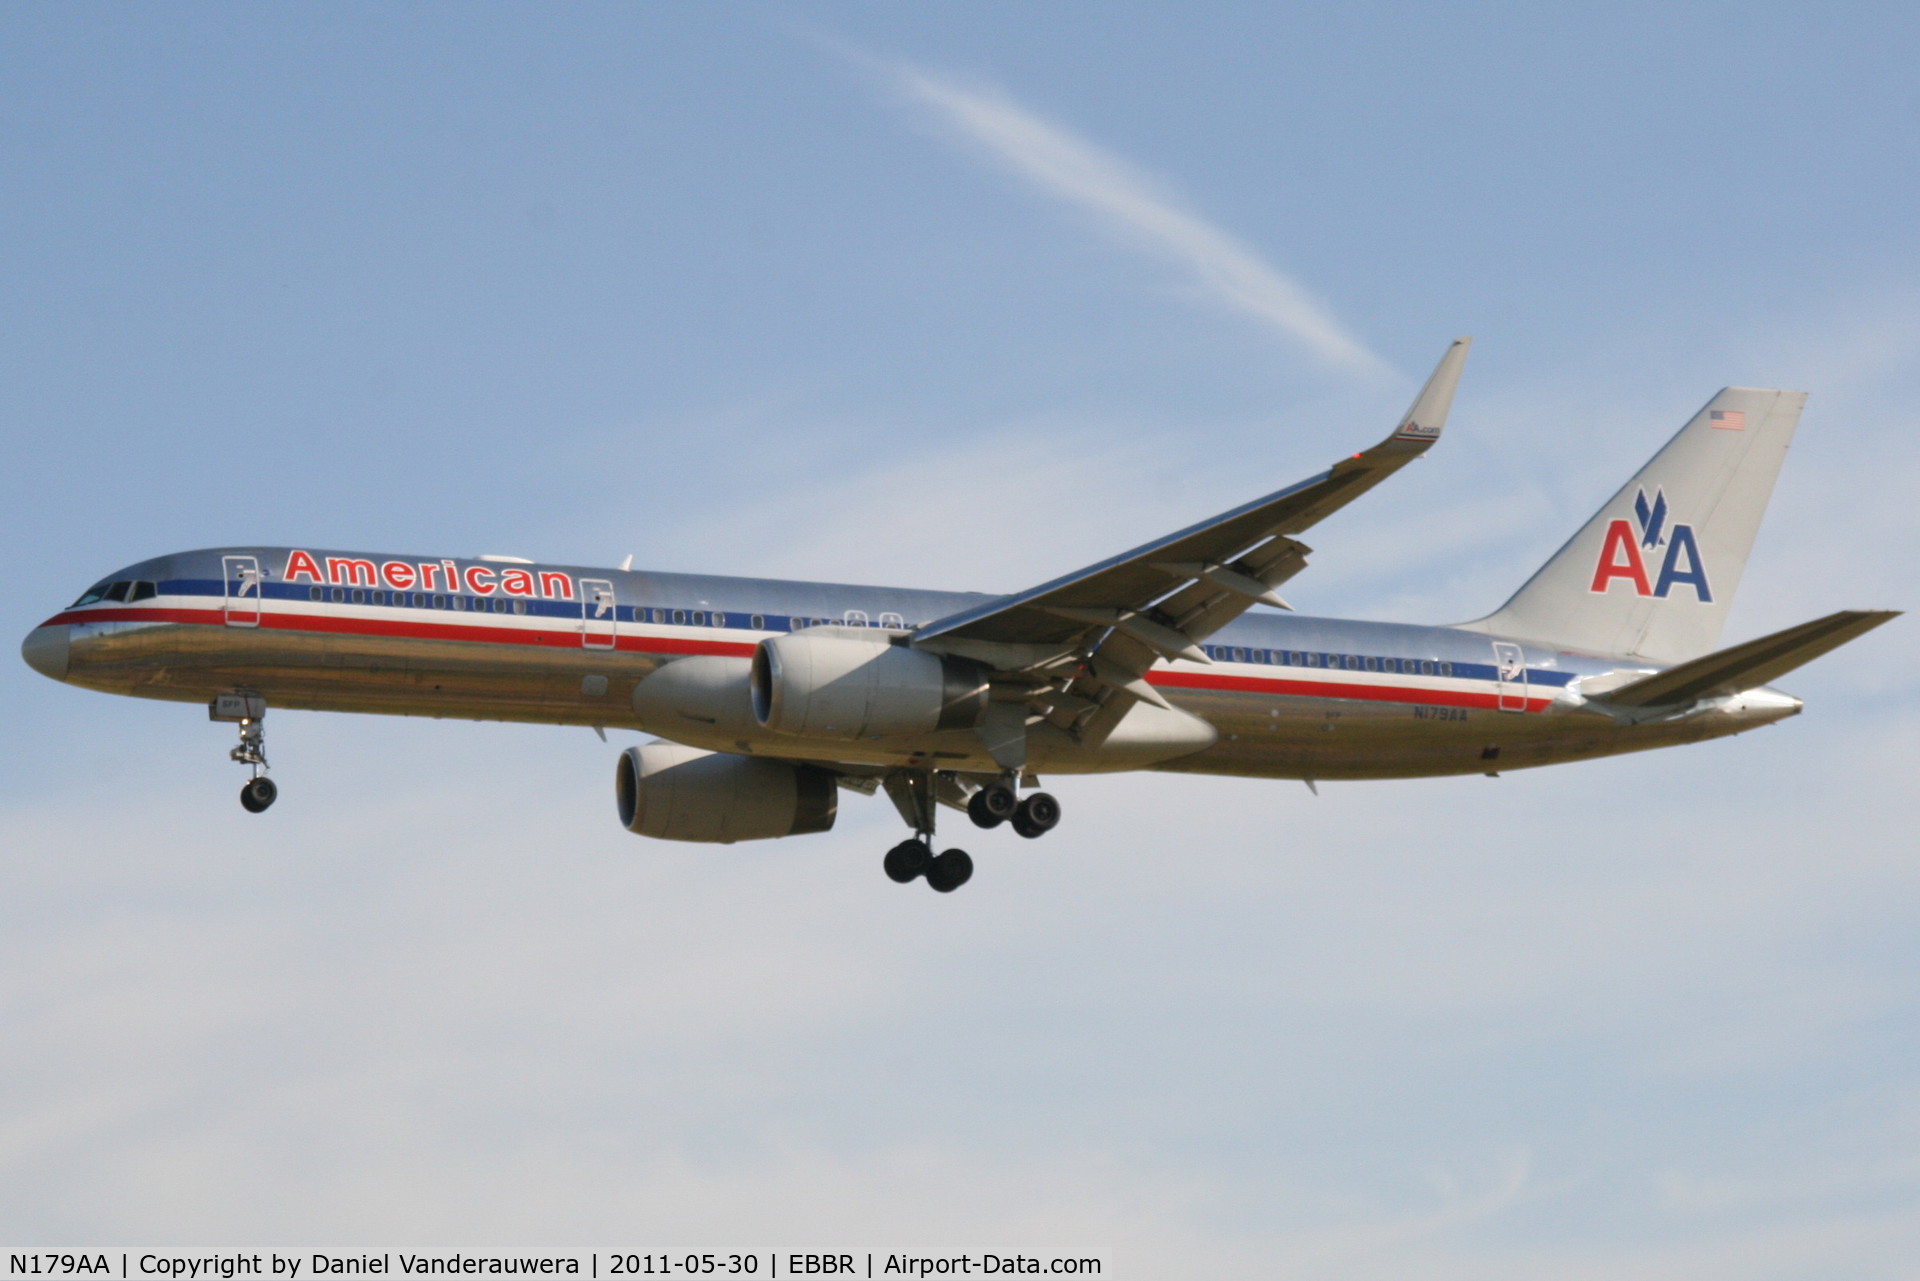 N179AA, 2002 Boeing 757-223 C/N 32397, Arrival of flight AA172 to RWY 25L